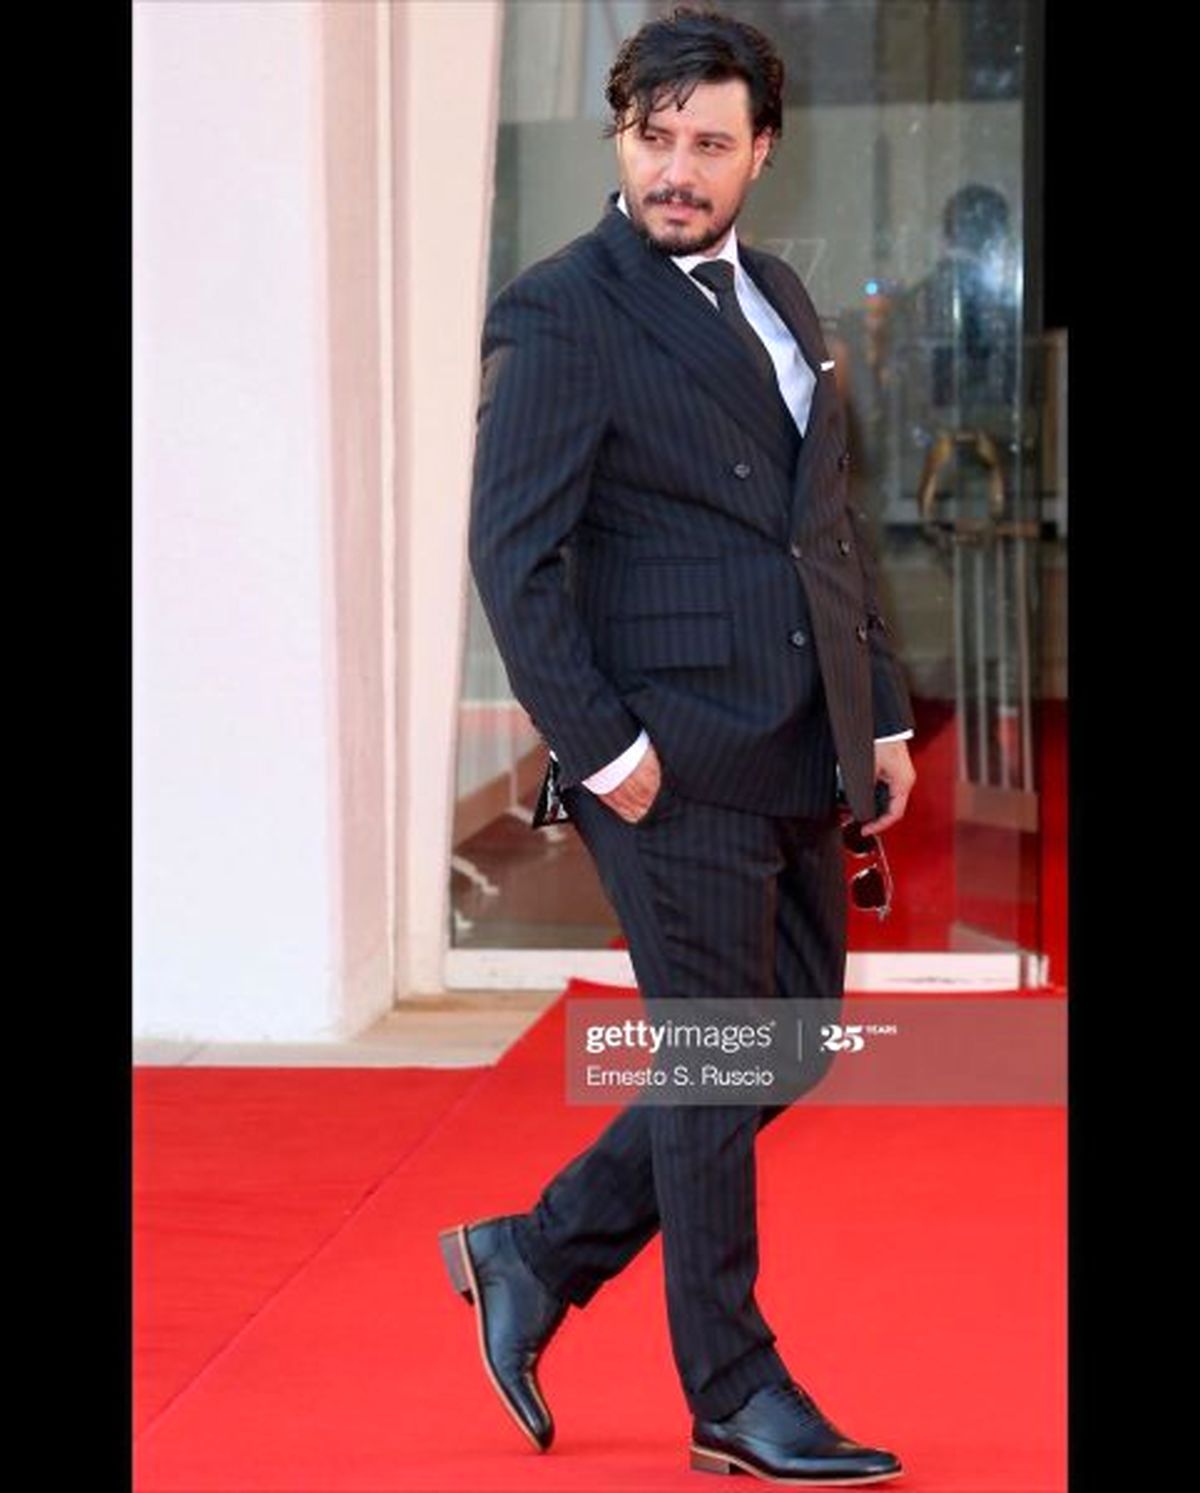 جواد عزتی، بازیگر سینمای ایران عصر یکشنبه روی فرش قرمز جشنواره فیلم ونیز ایتالیا